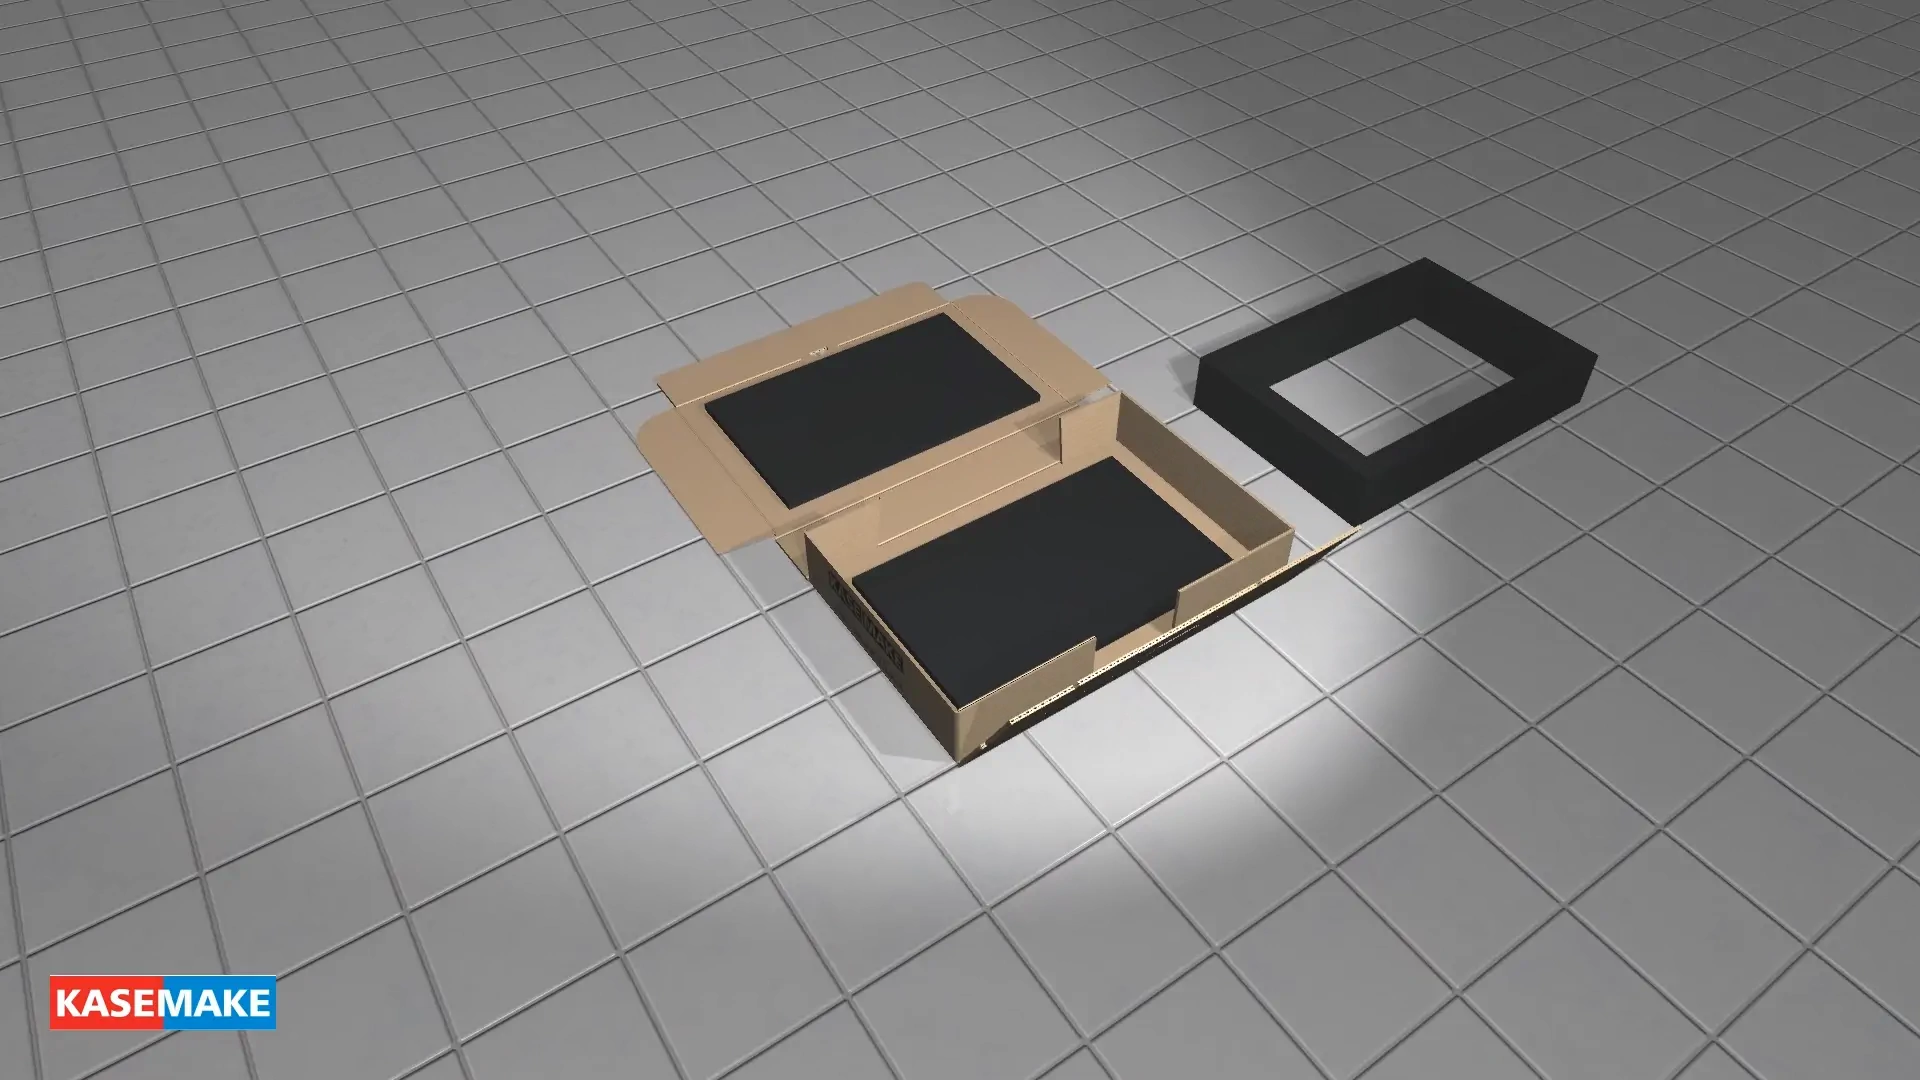 观看 FEFCO 0426 盒子以逼真的 3D 形式折叠起来